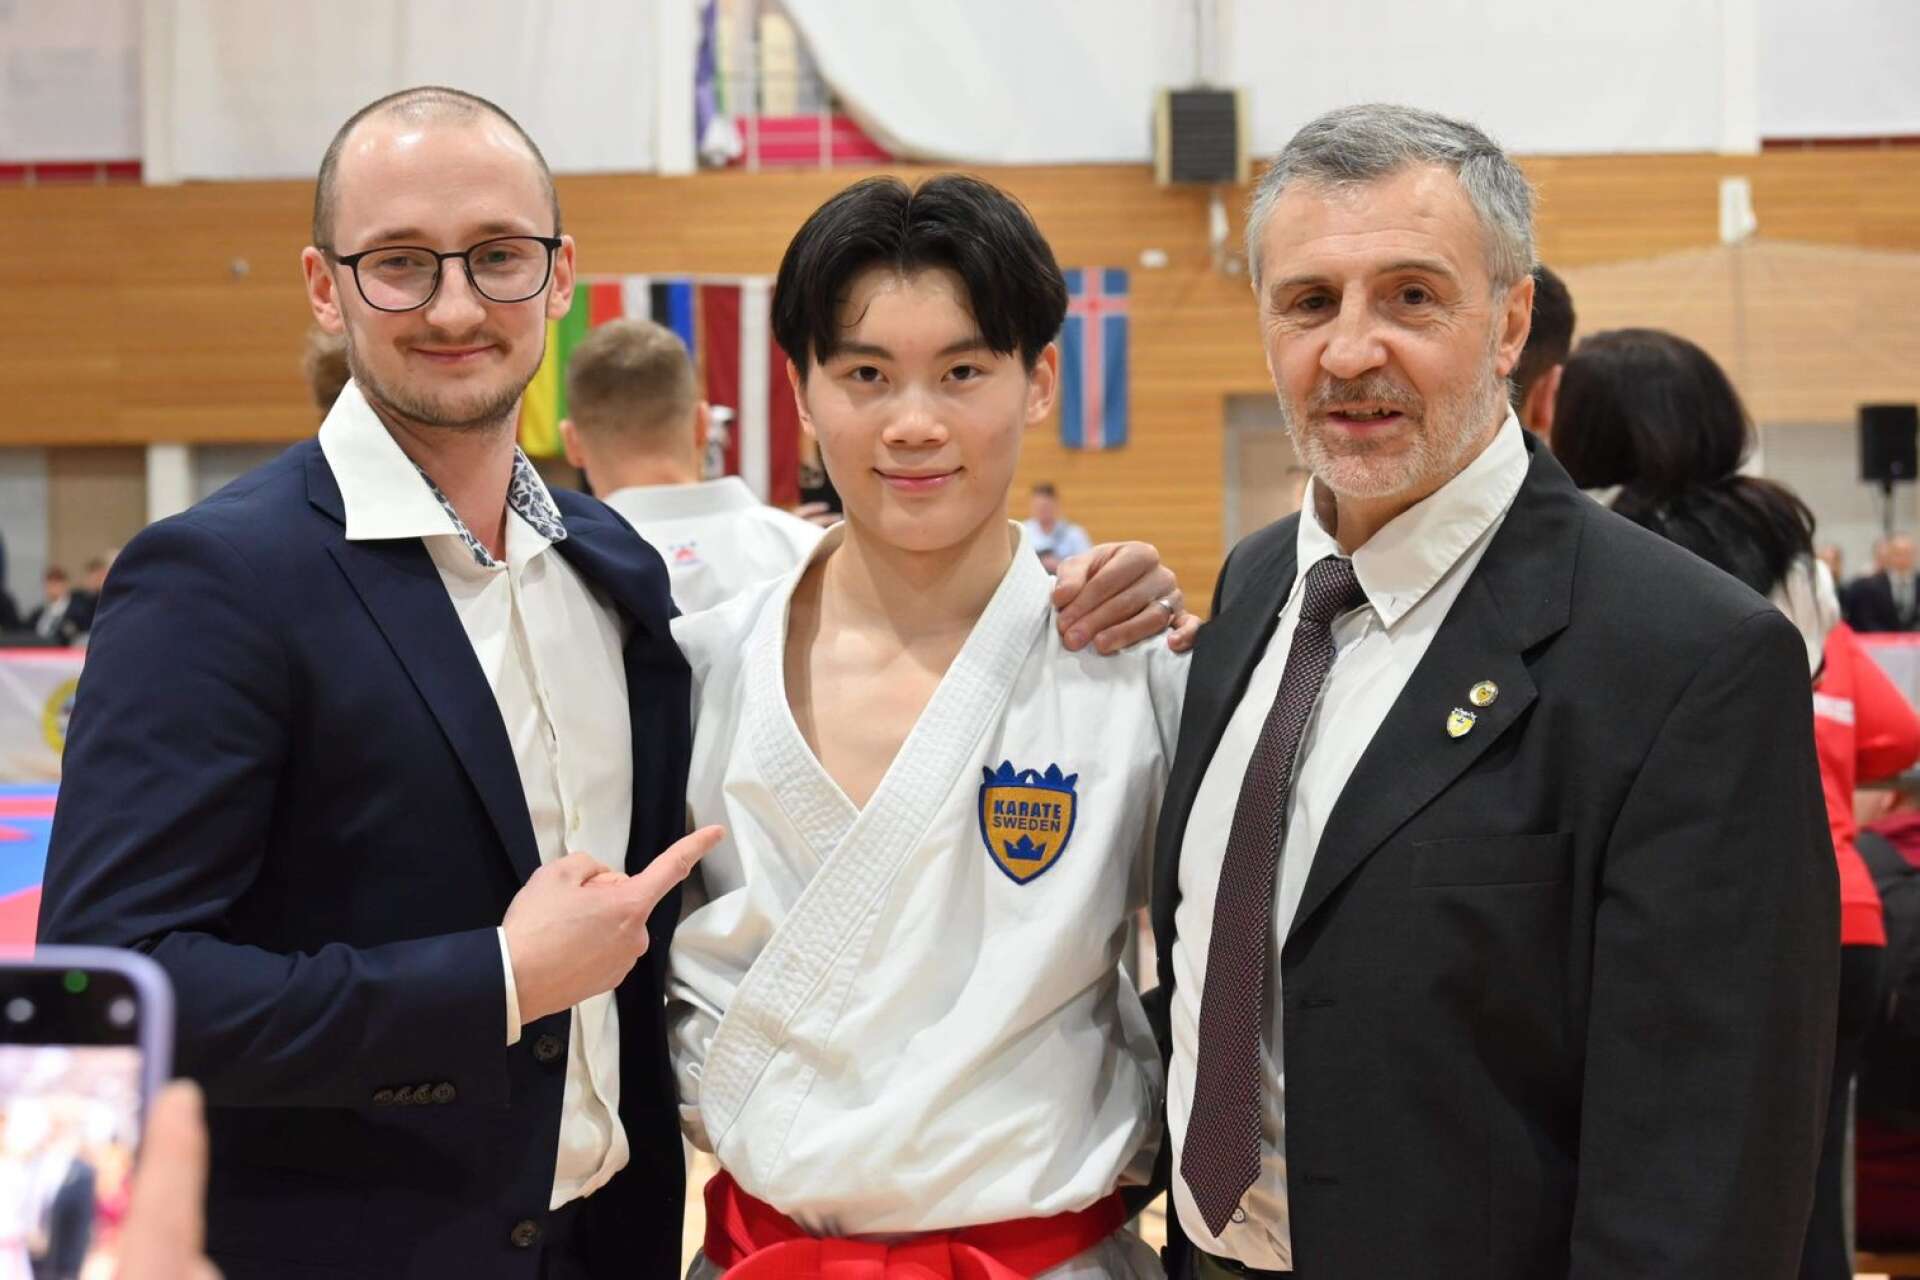 William med förbundskaptenen Emilio Merayo, från Karlstad karateförening, och Felix Falk, assisterande förbundskapten i kata.